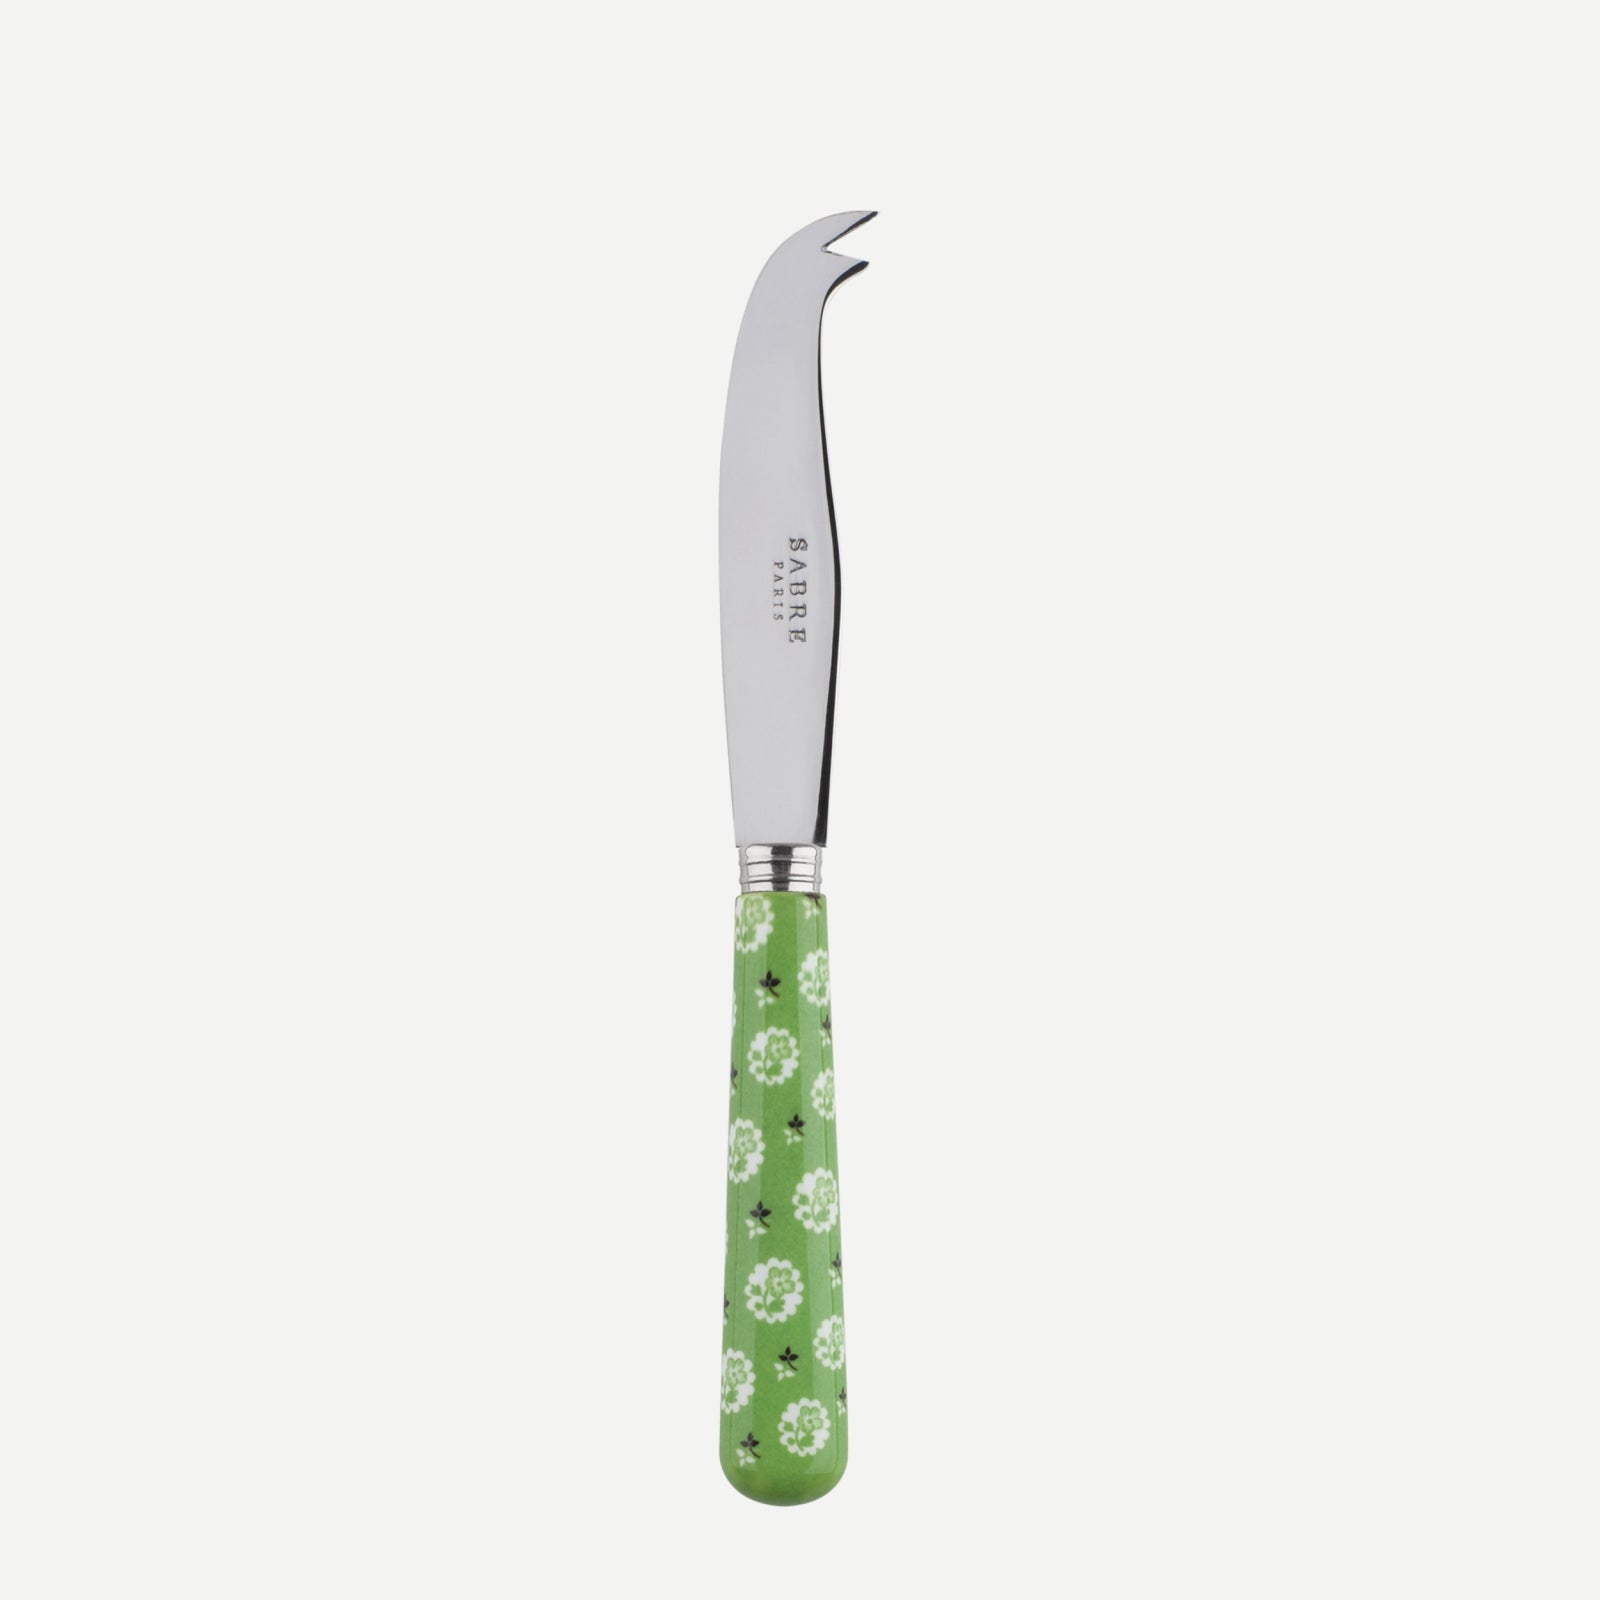 Cheese knives - Provencal - Garden green